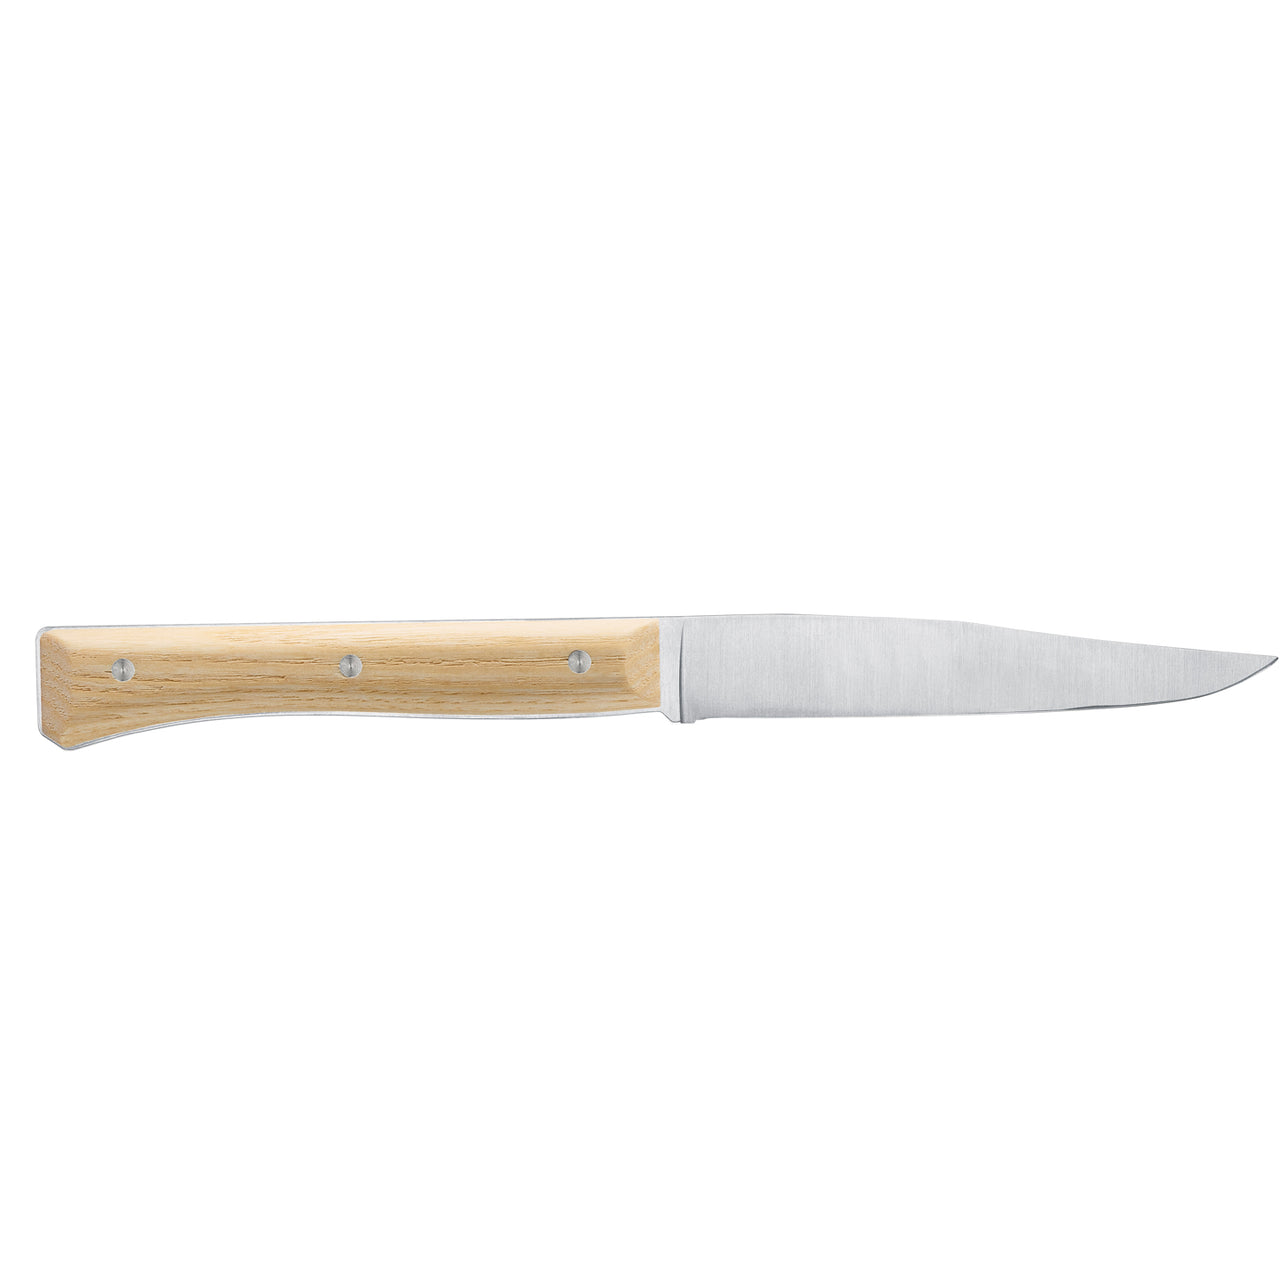 Opinel Facette Steak Knives / Set of 4 / Ash